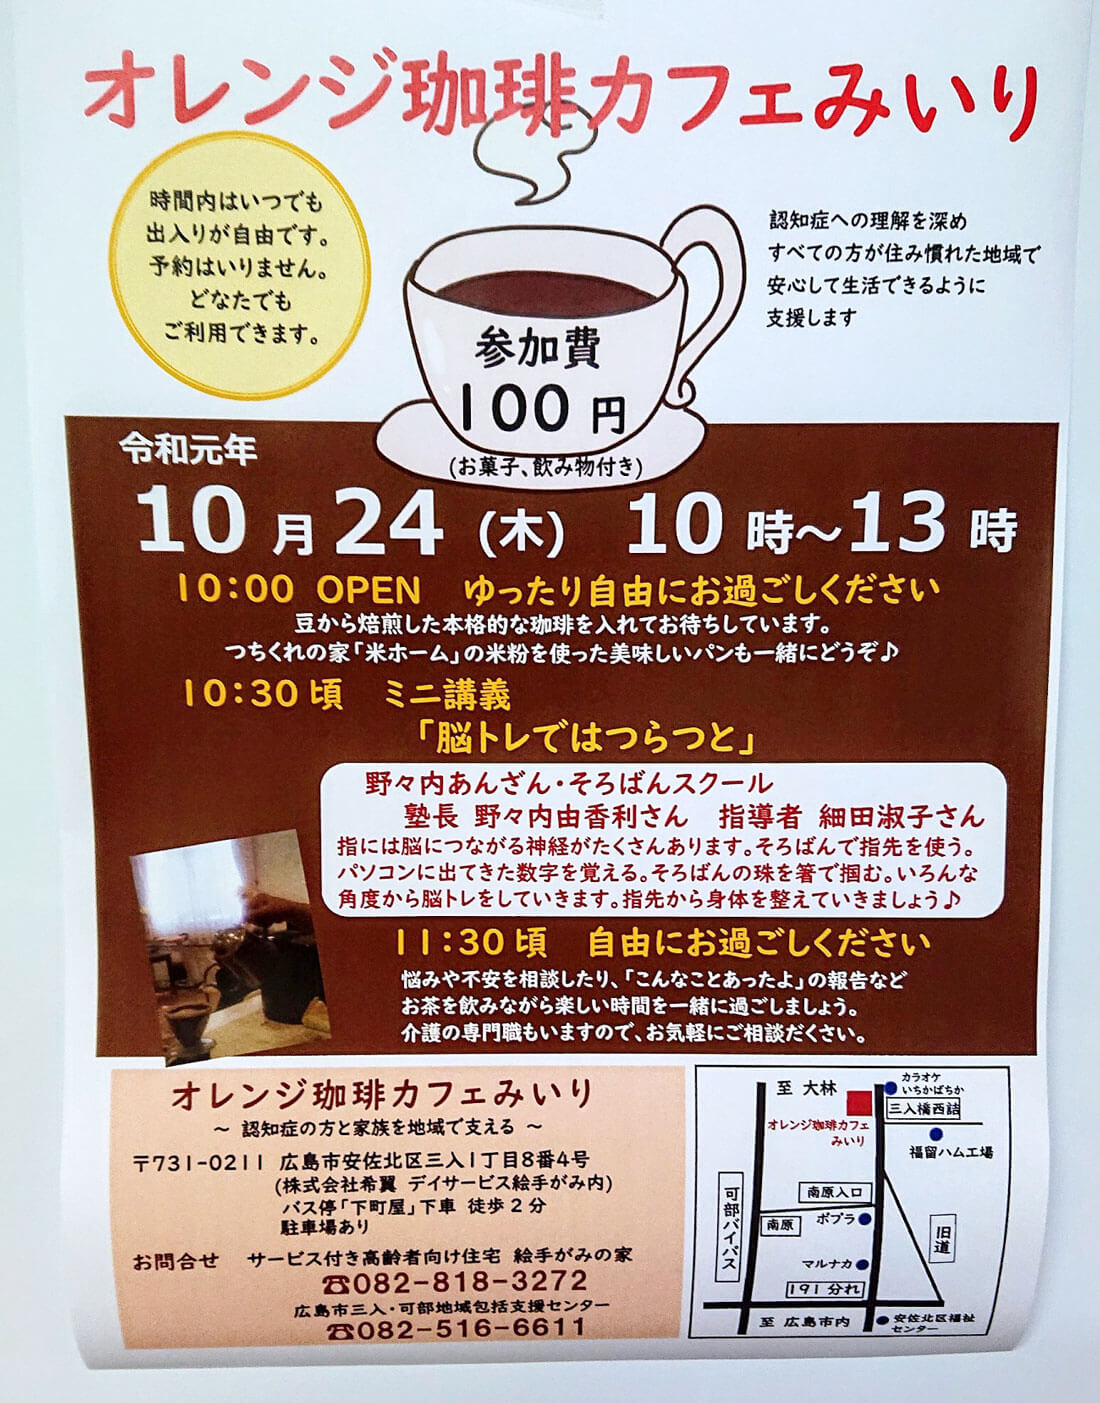 一般社団法人 日本能力育成協会 認知症カフェ